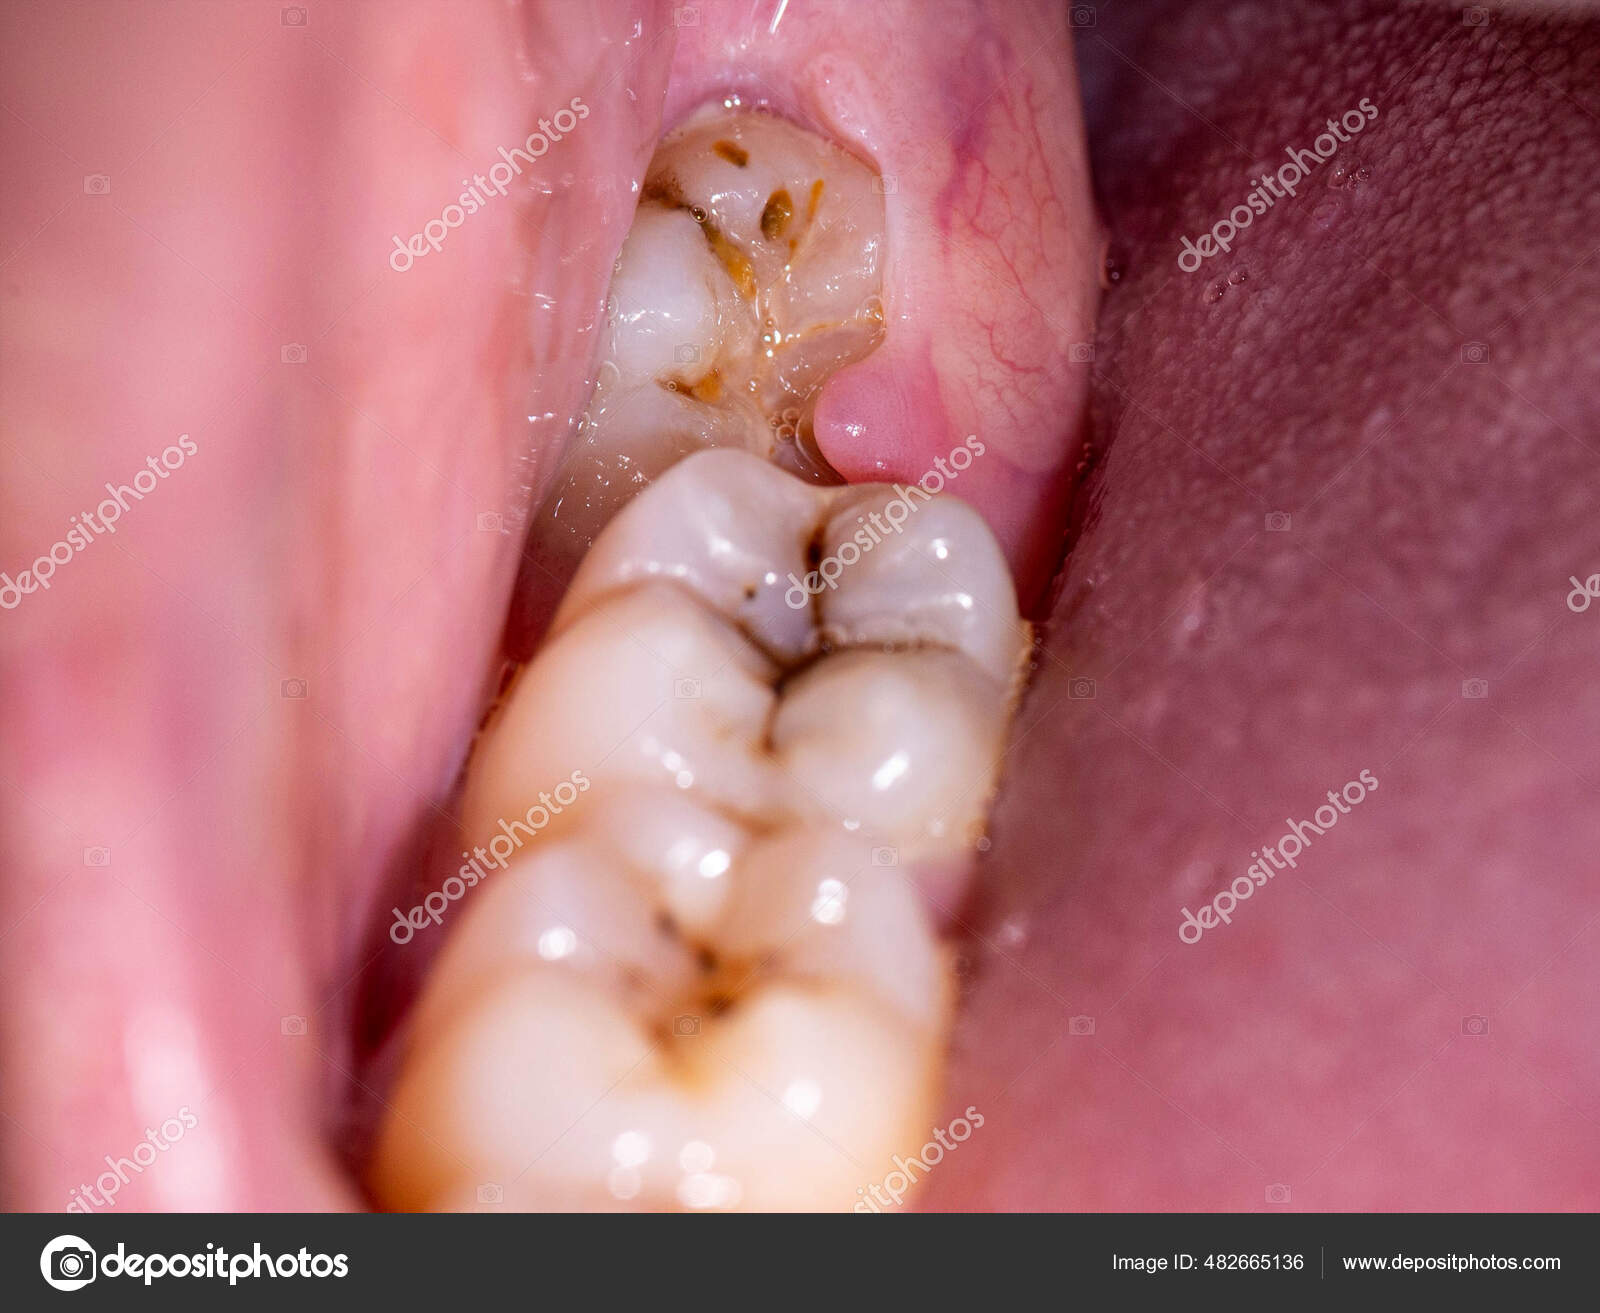 牙齒咬起來酸酸的---牙齒裂了 - 案例介紹 - 美容牙科張凱榮醫師